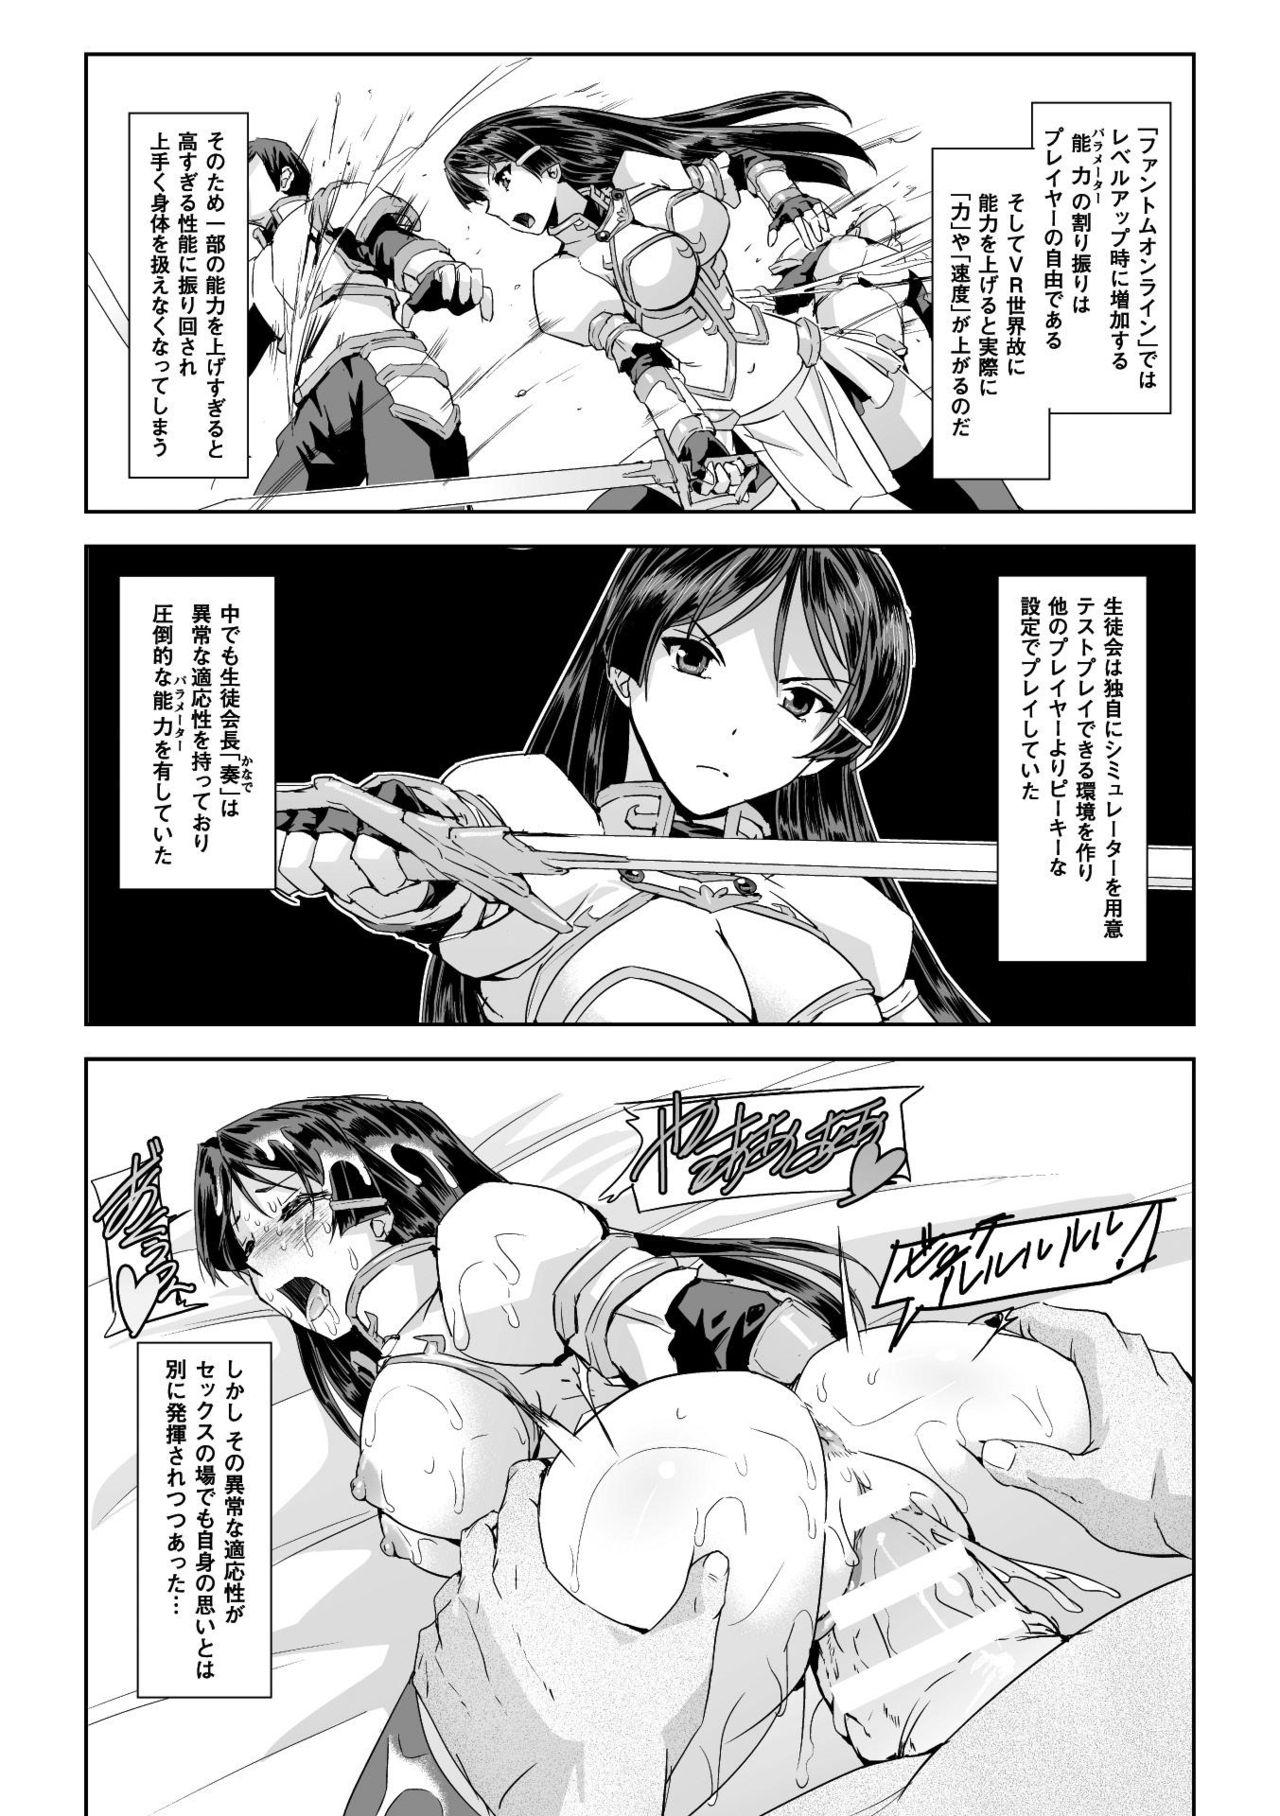 Seigi no Heroine Kangoku File Vol. 16 4